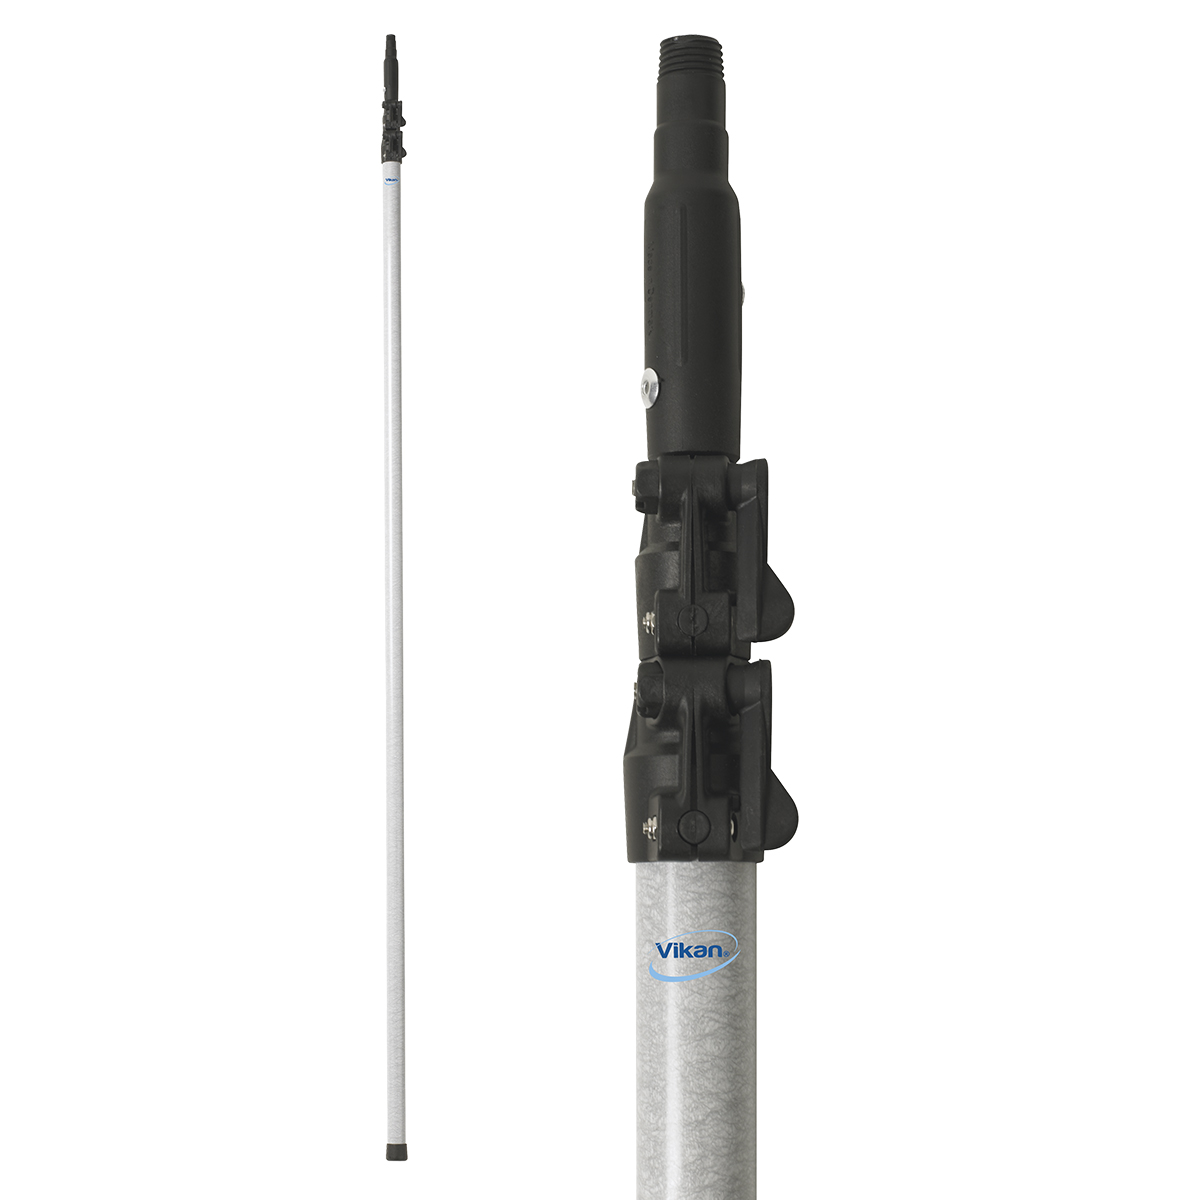 Vikan Glasfaserteleskopstiel mit Gewinde, Durchmesser 37 mm, ArtNr.: VIK2979